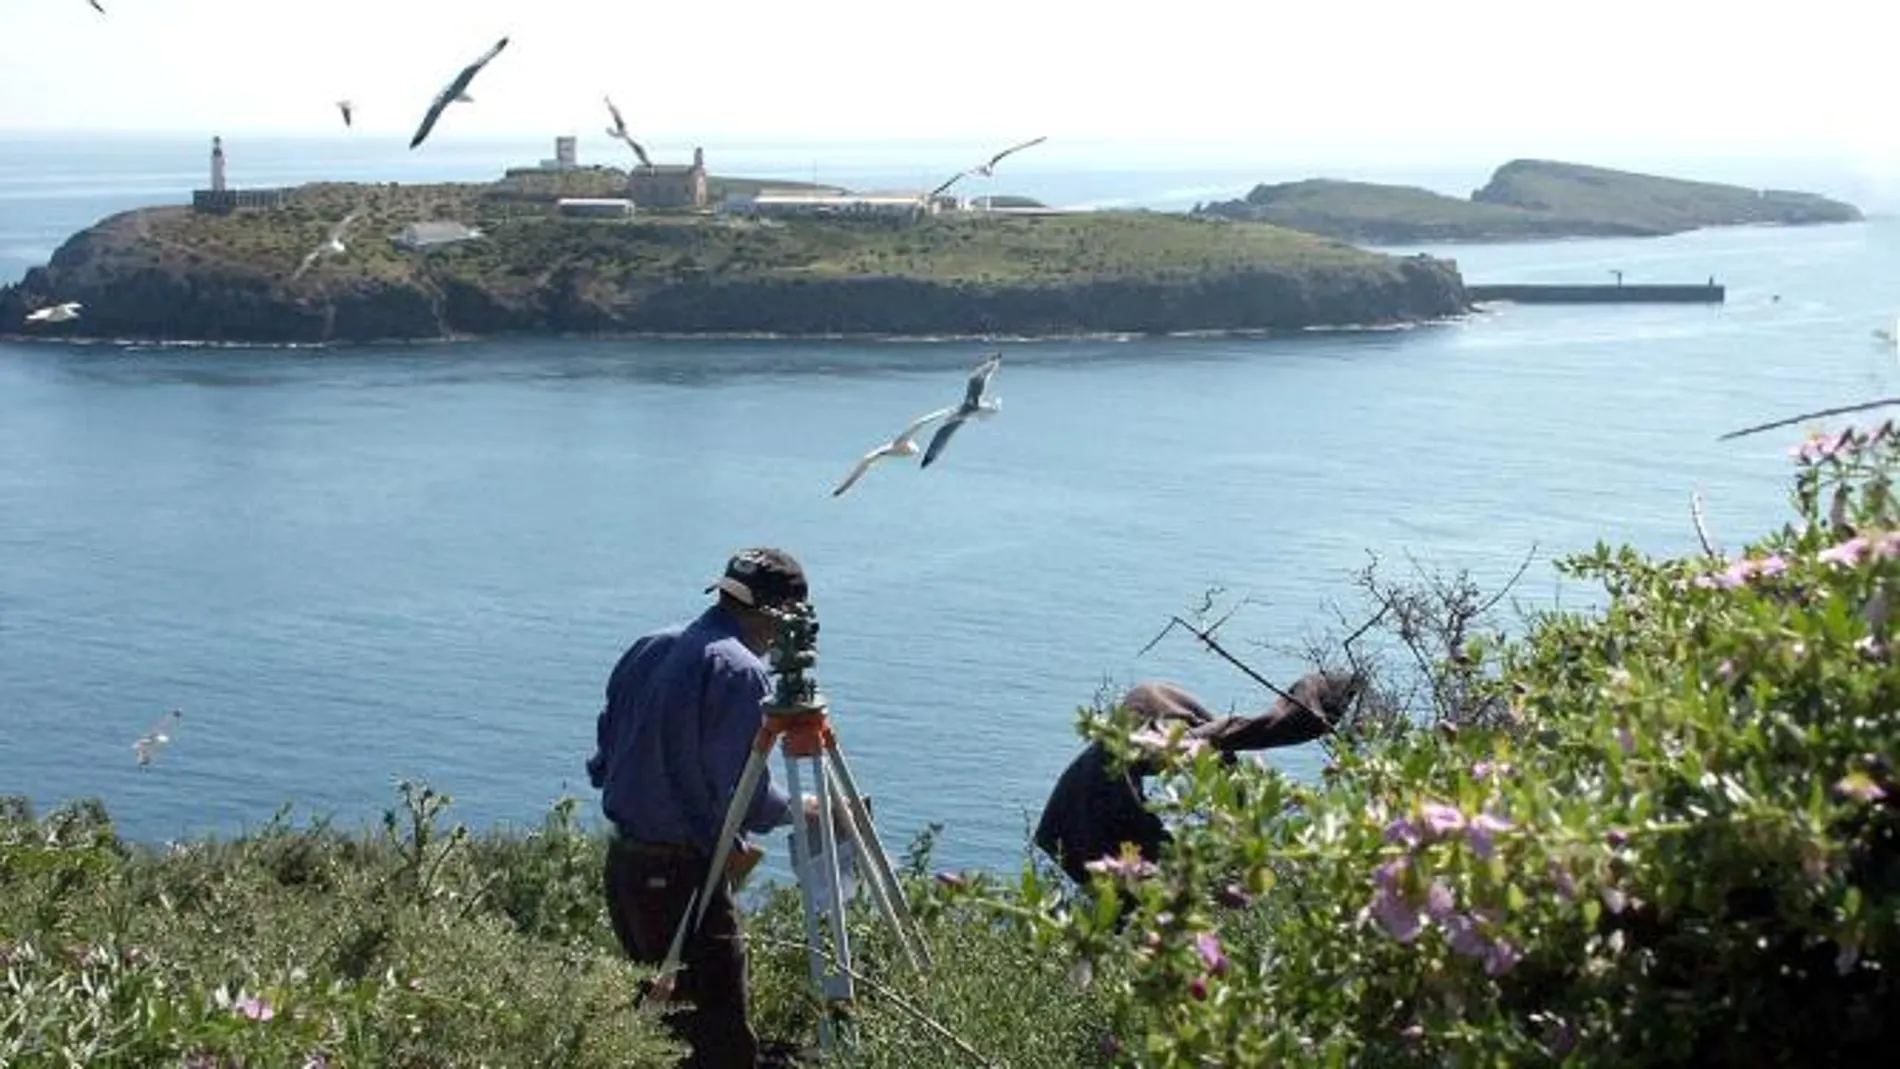 Un topógrafo del Insituto de Cultura Mediterránea de Melilla trabaja en la Isla del Congreso, una de las tres que componen el archipiélago de Chafarinas, situadas a 50 kilómetros de Melilla (2003)